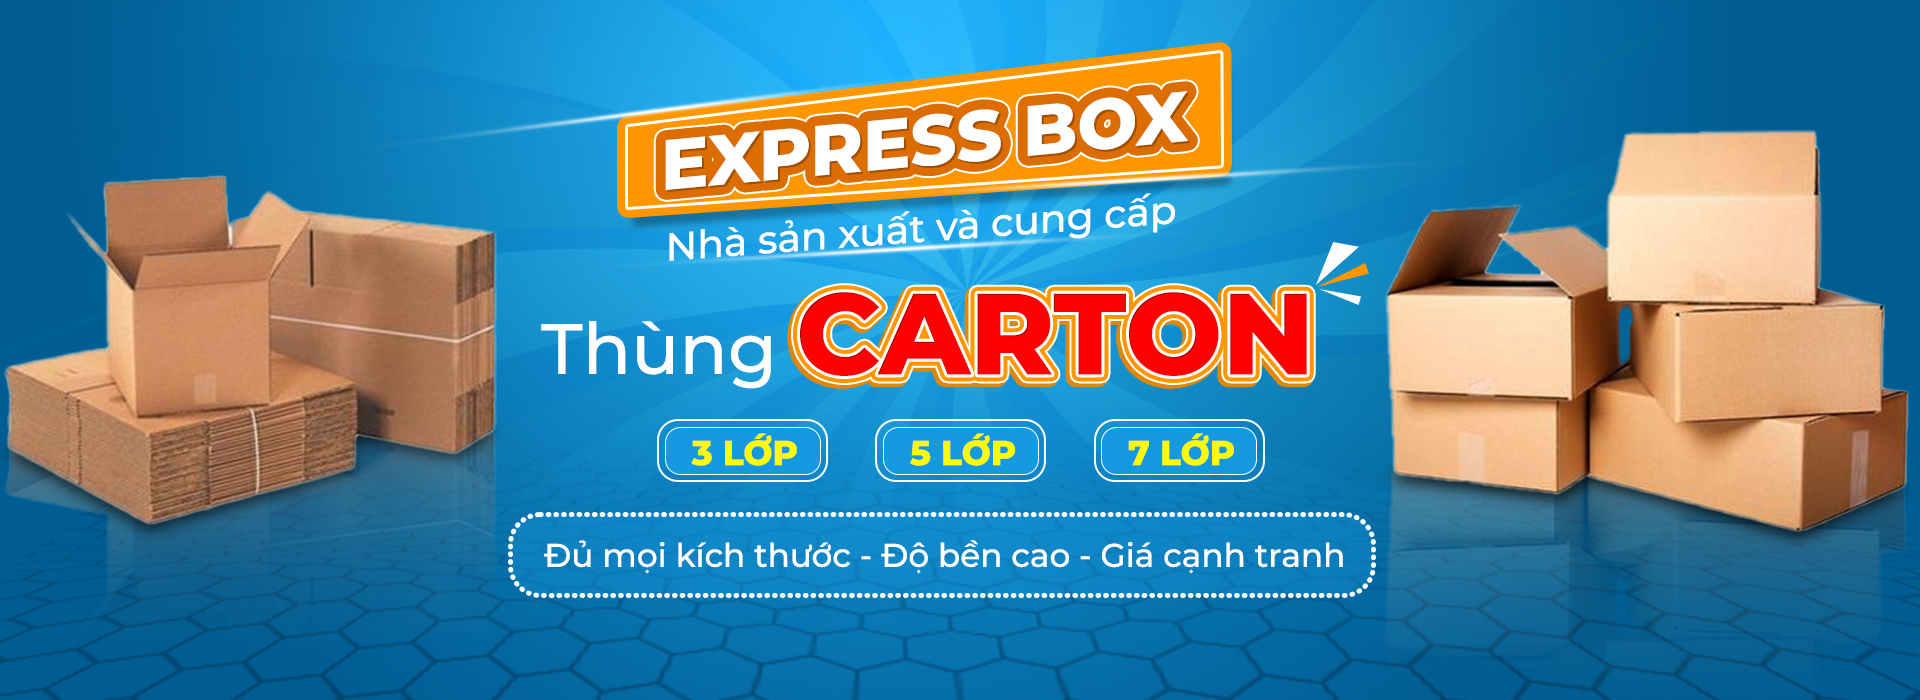 CÔNG TY TNHH EXPRESS BOX